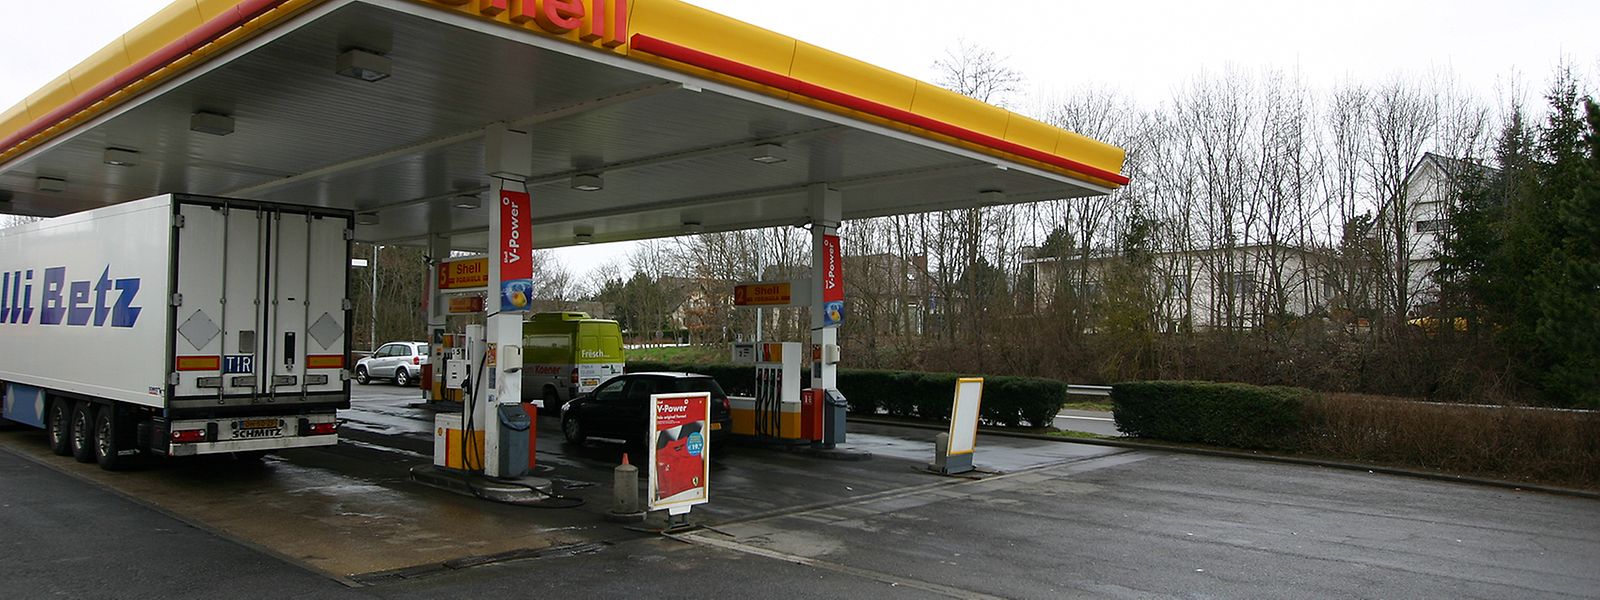 Seit Oktober 2019 ist sie Geschichte: Die Shell-Tankstelle an der A4